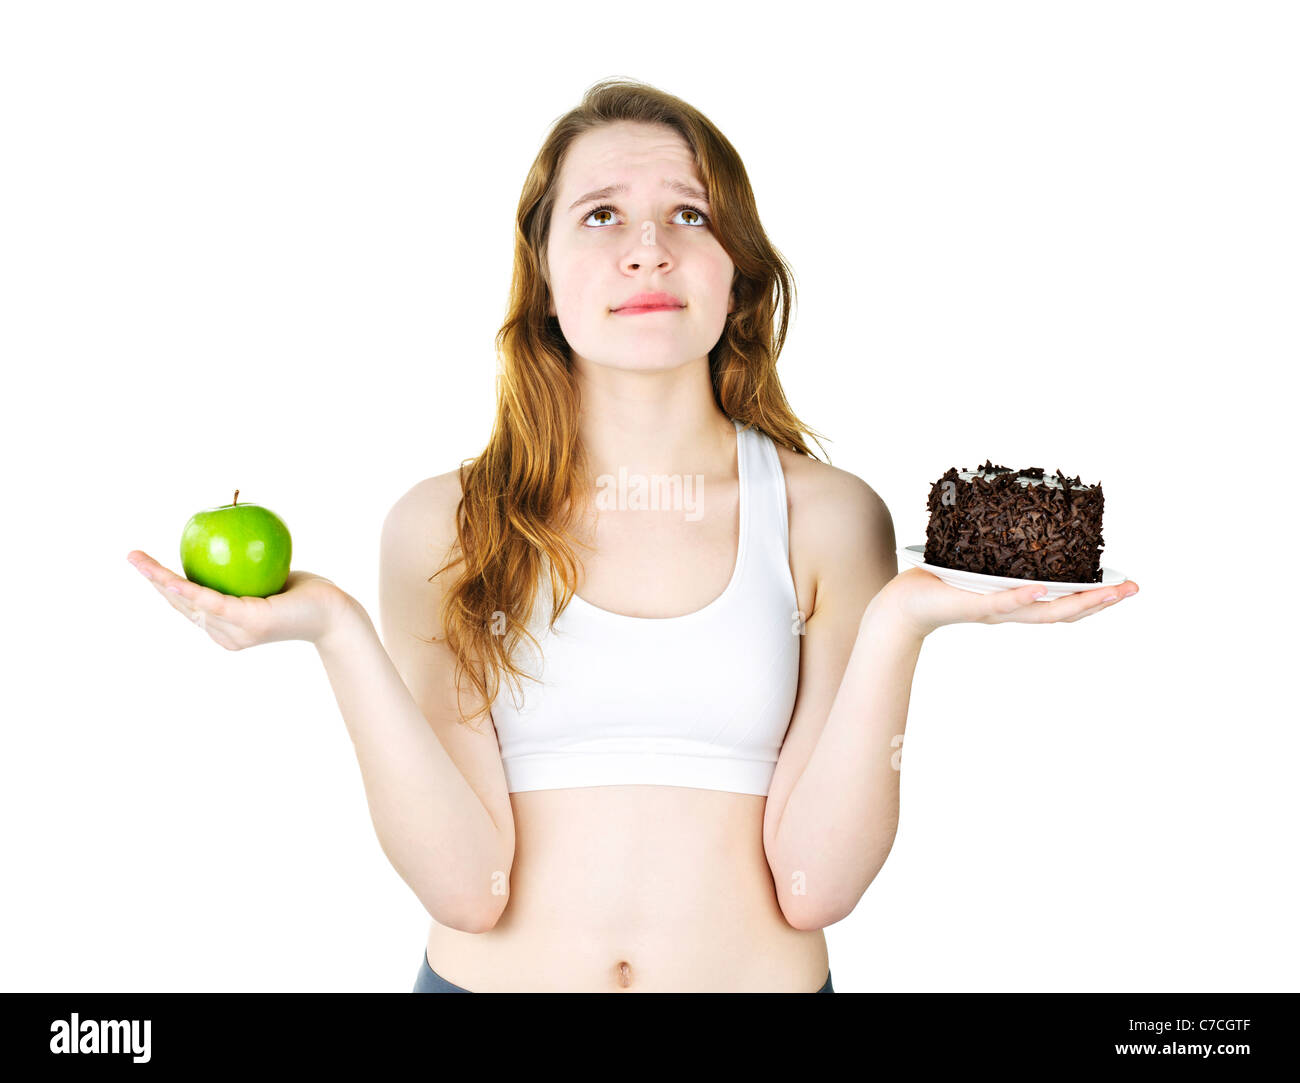 Versucht junge Frau mit Apfel und Schokolade Kuchen, so dass eine Wahl Stockfoto